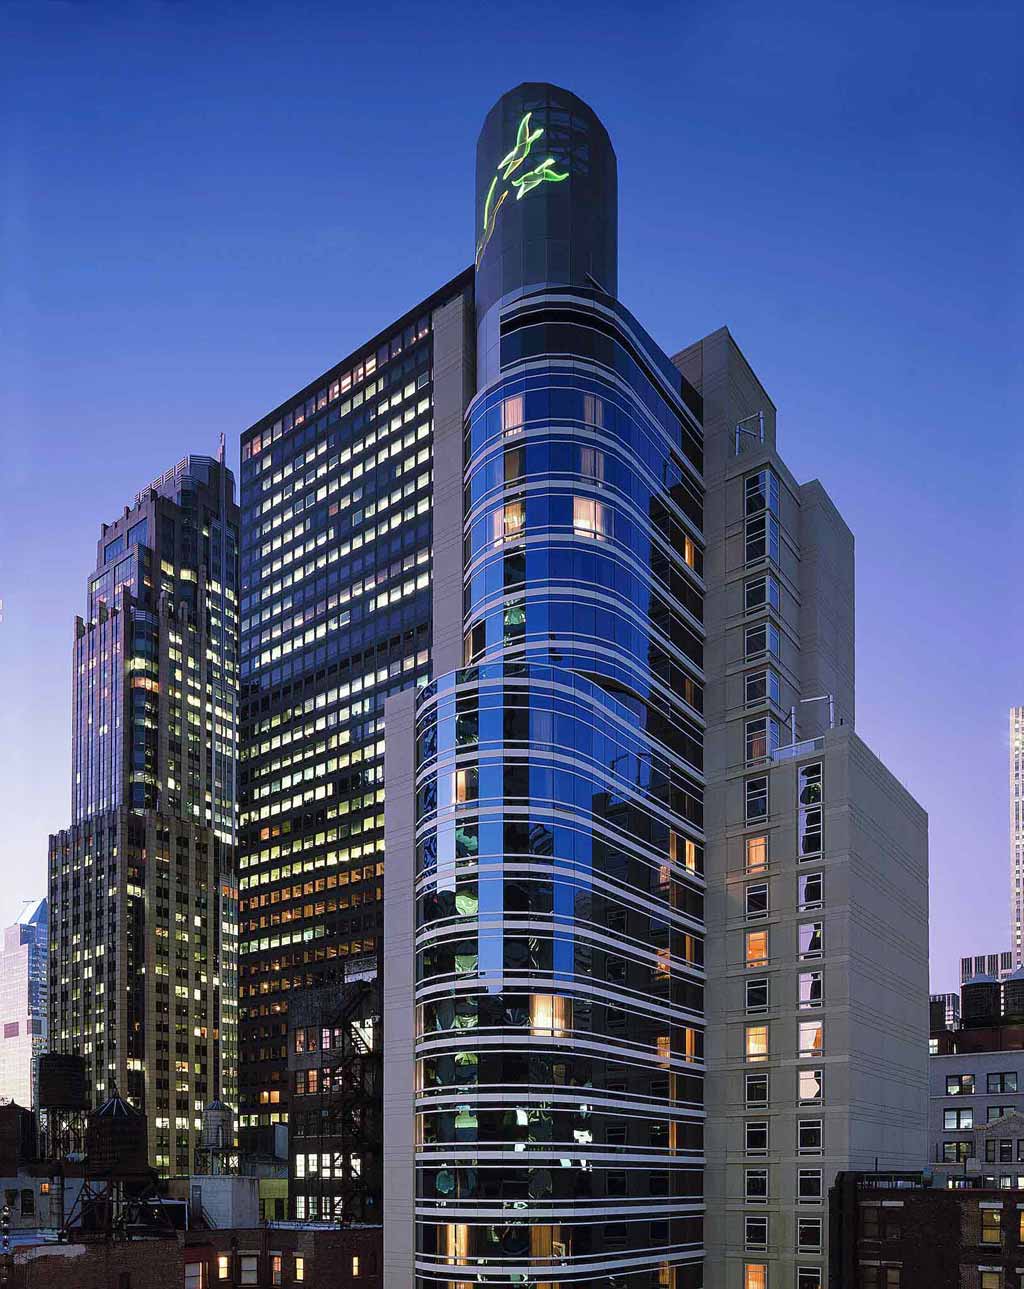 Sofitel New York Hotel, New York, NY Five Star Alliance